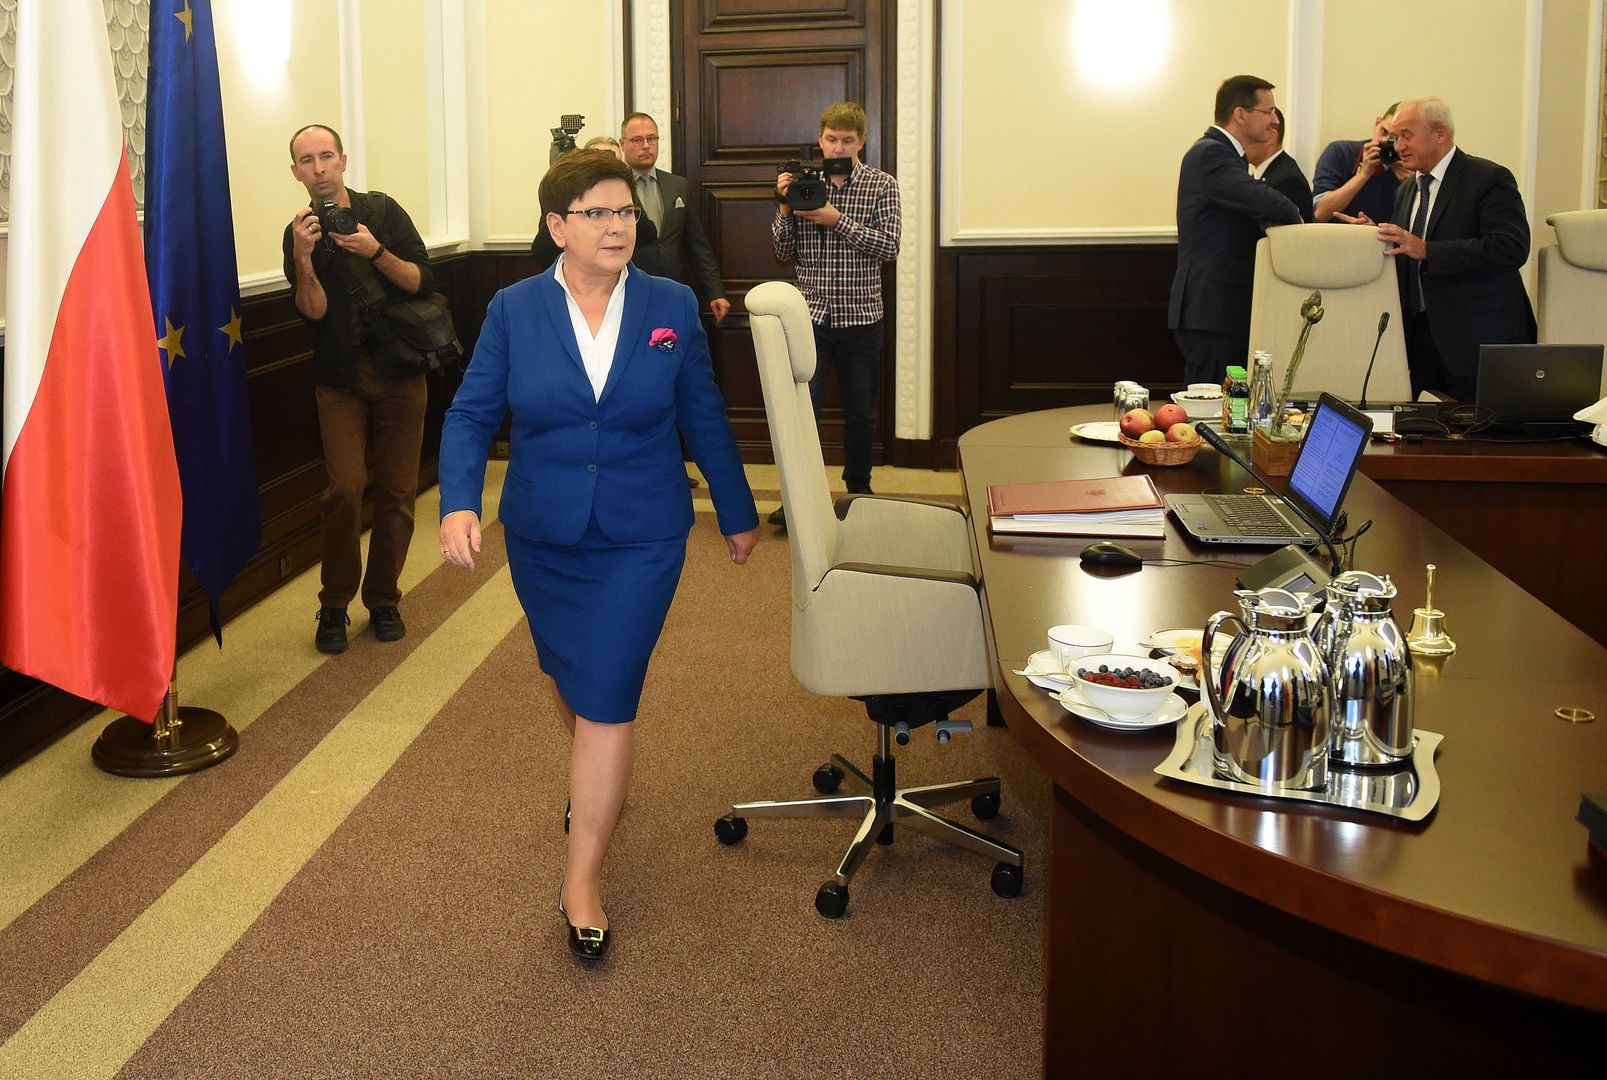 Grudniowa dymisja Beaty Szydło skończyła mnożące się spekulacje na temat rekonstrukcji rządu